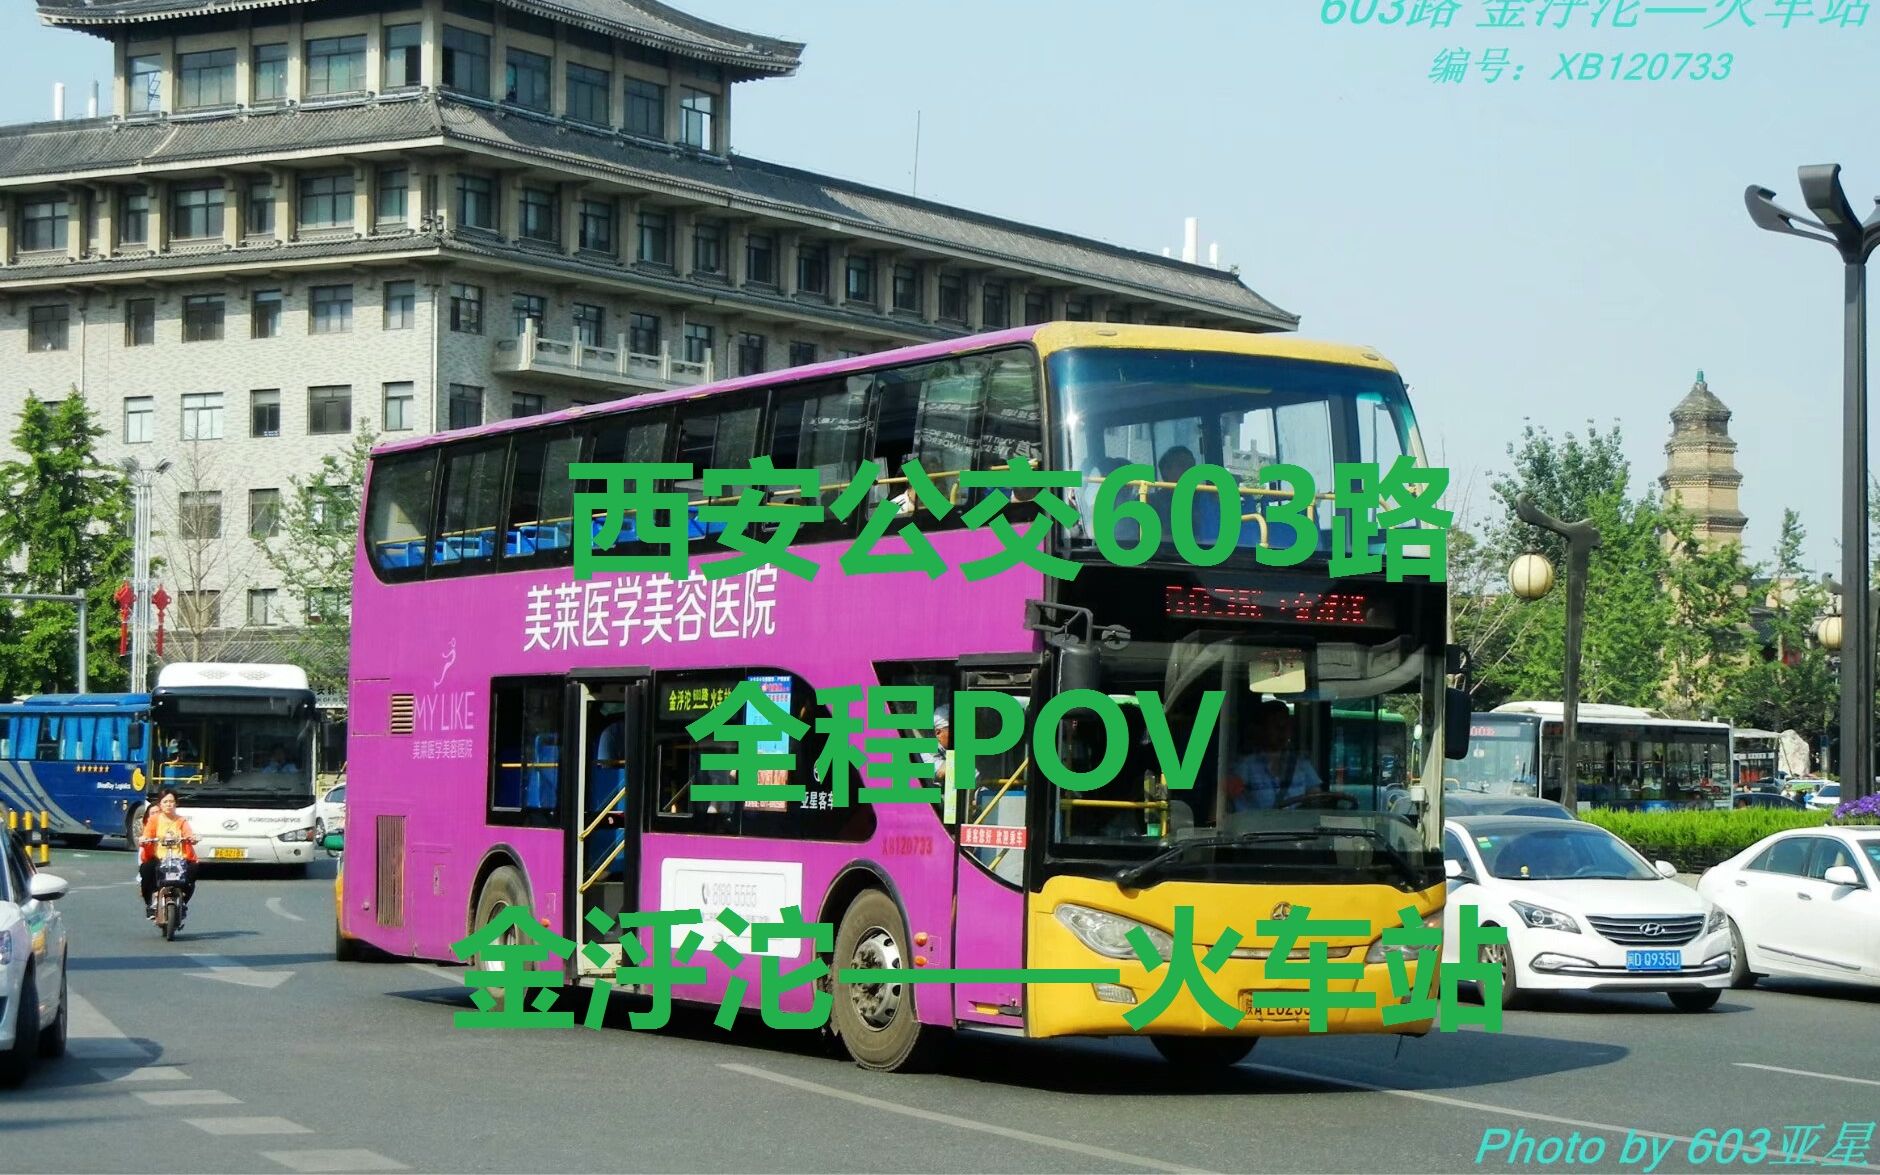 西安公交603路图片